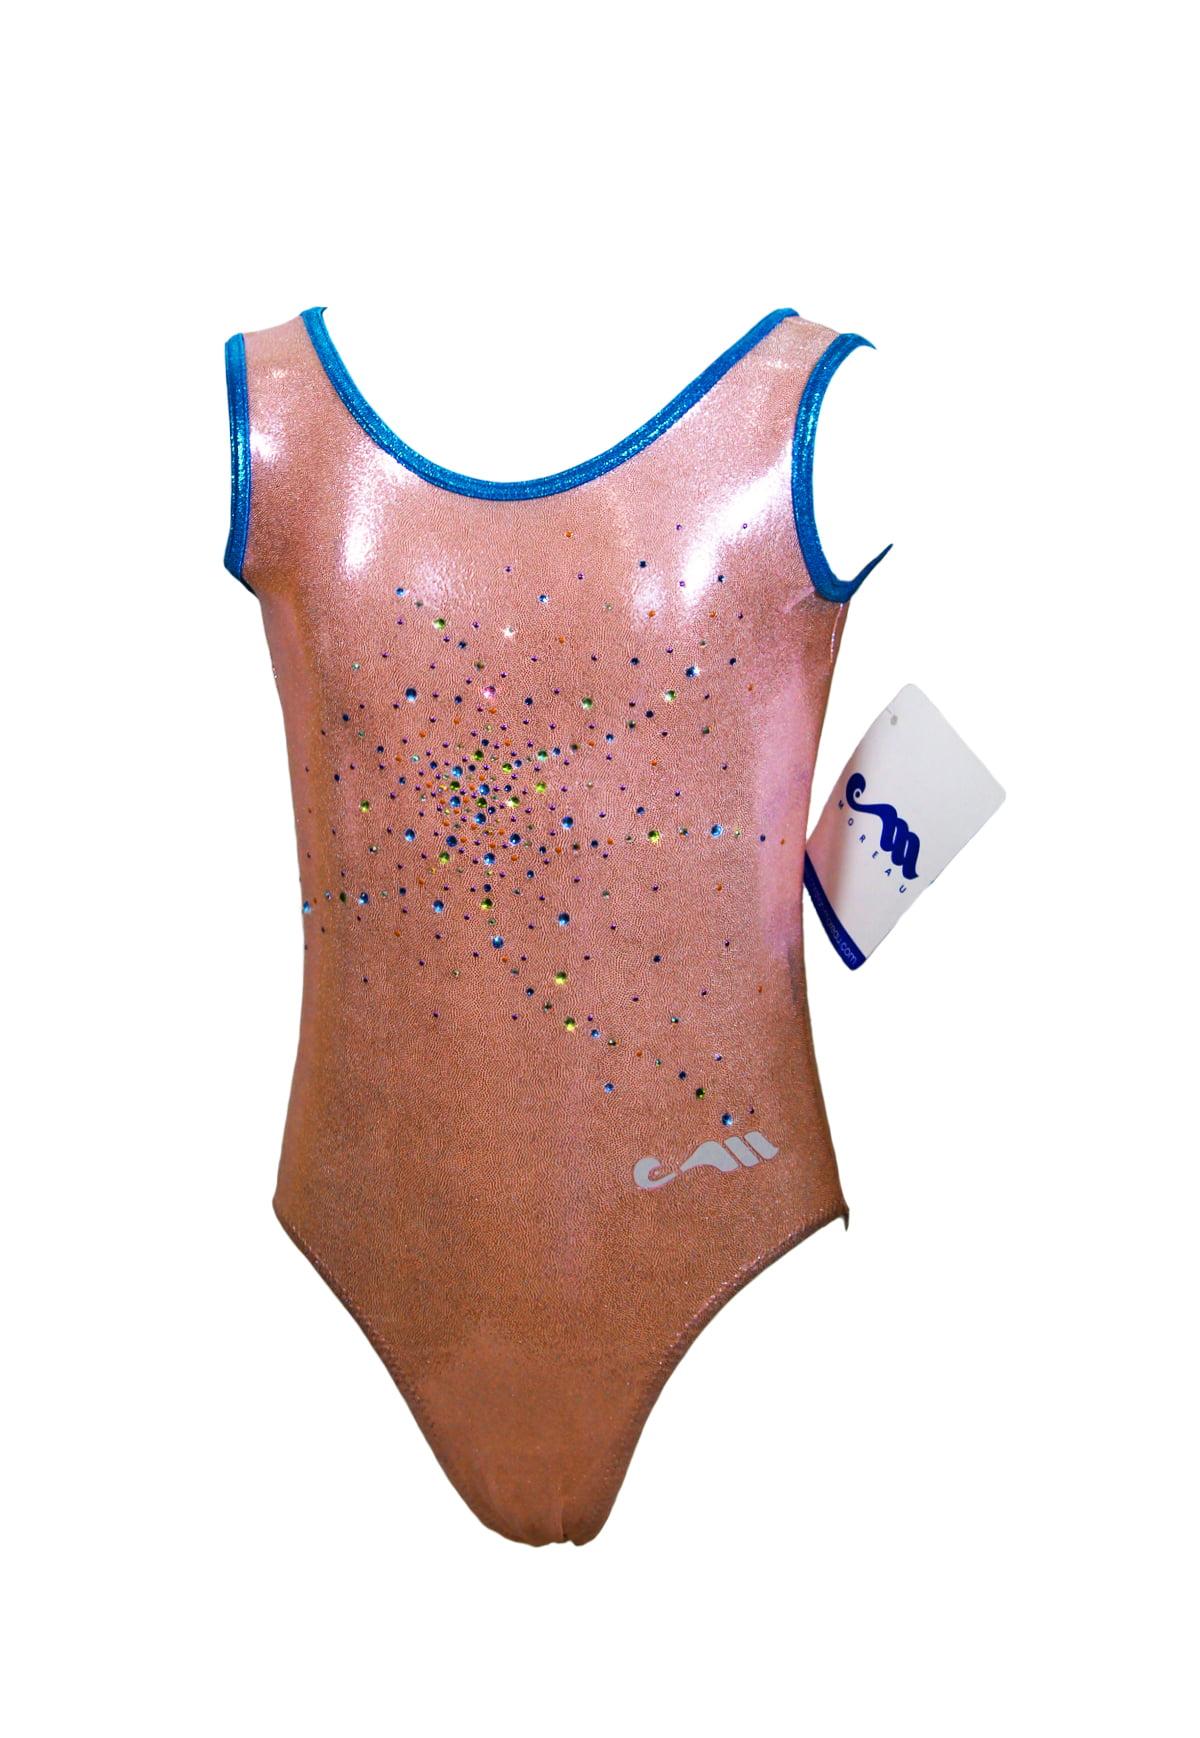 Купальник для спортивной гимнастики Christian Moreau 4282 бледно-розовый со стразами и синей окантовкой на лямках без рукава